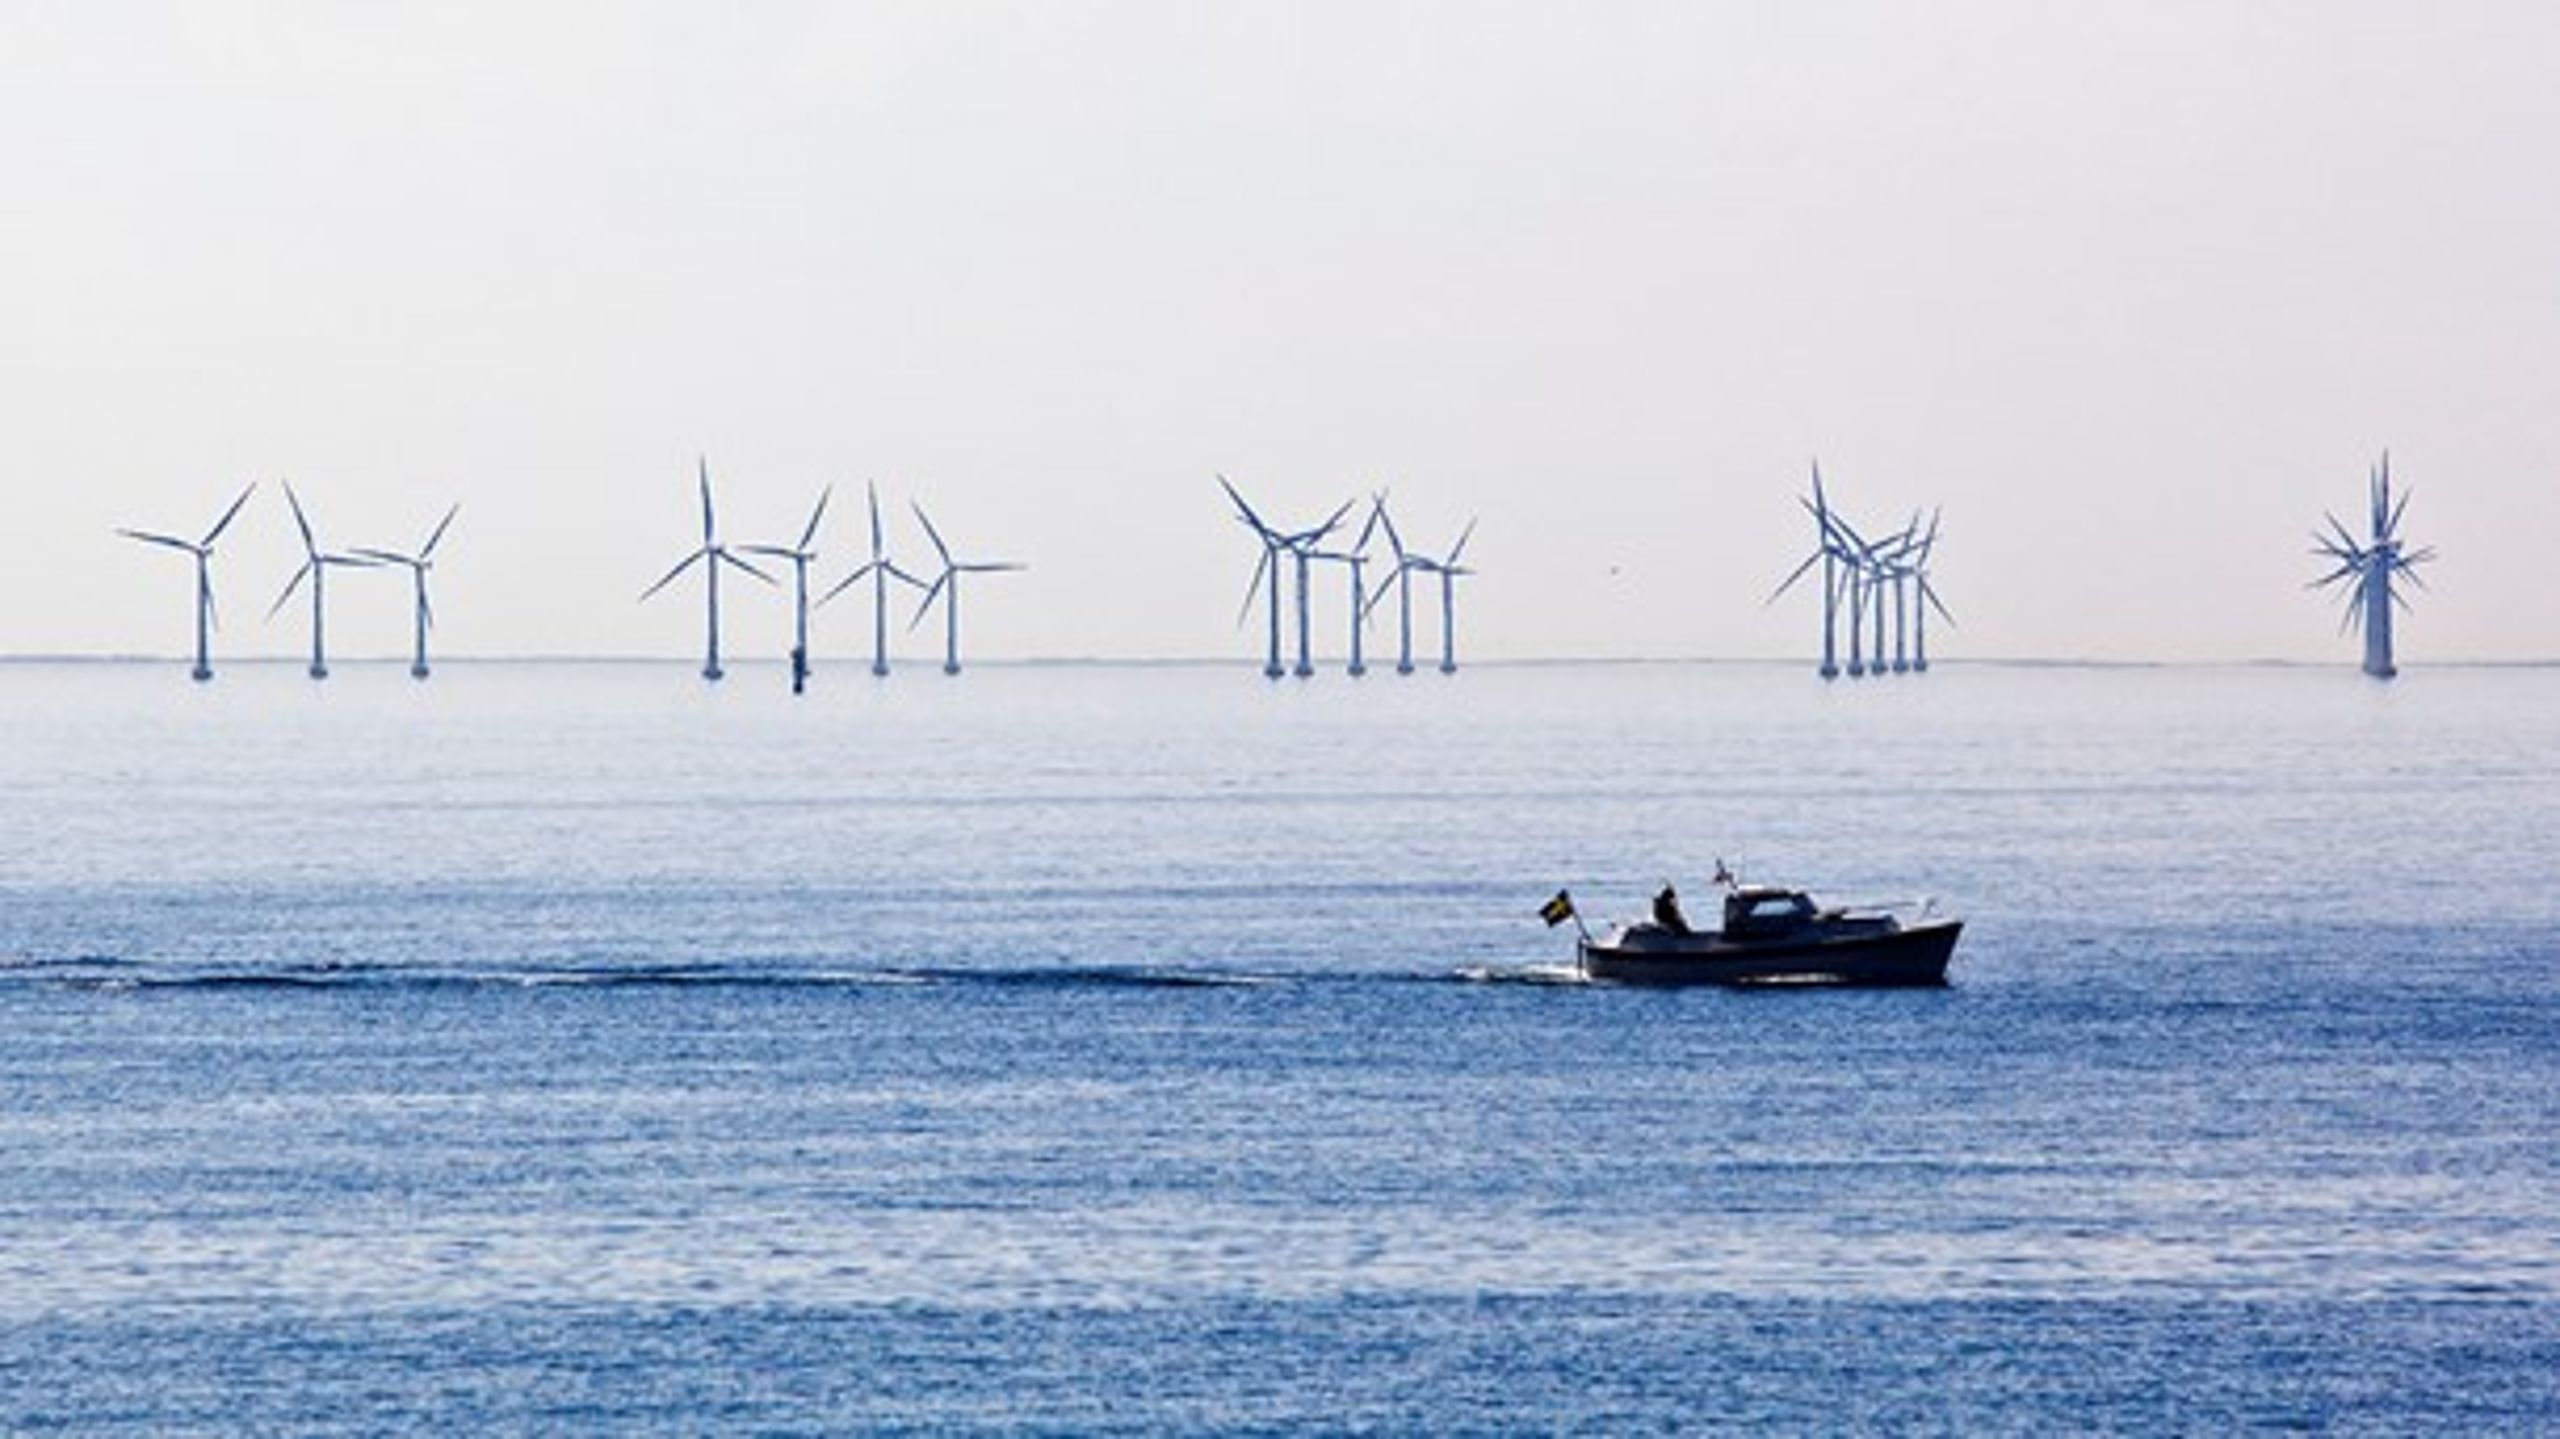 Kystnære havvindmøller og regeringens energipolitiske redegørelse er på programmet i denne uge.